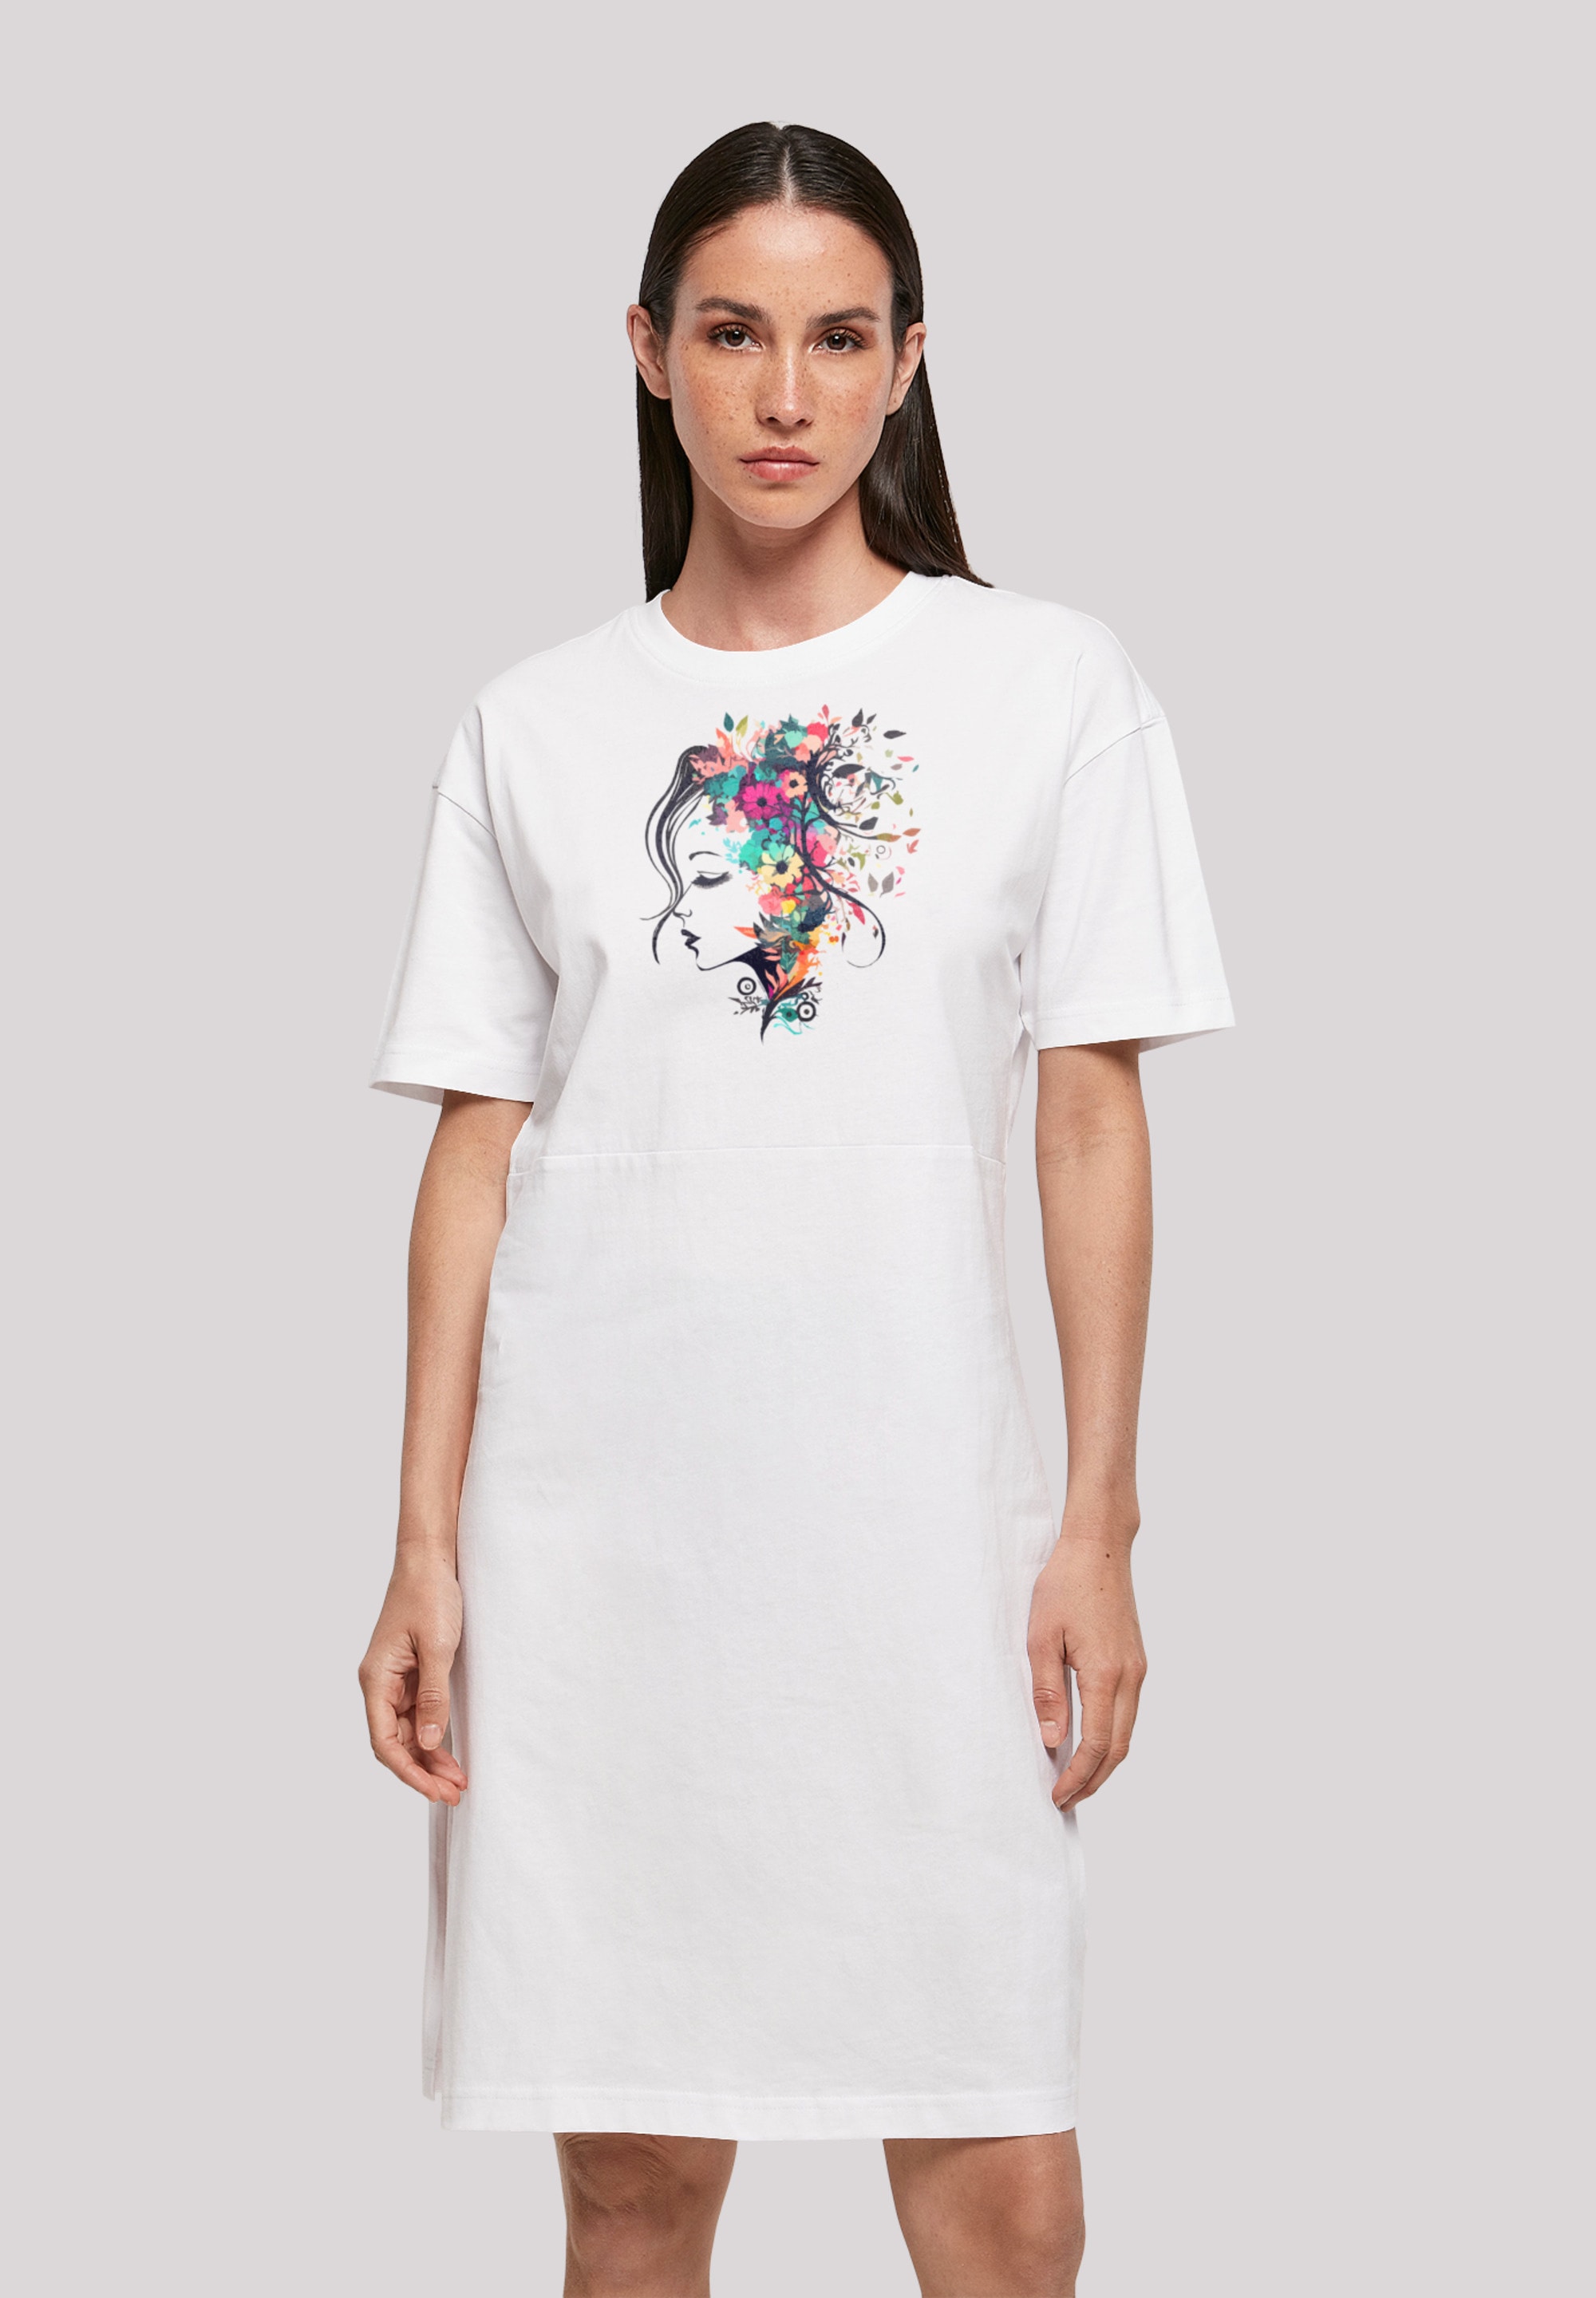 »Blumen Silhouette Bunt«, Shirtkleid bestellen Print F4NT4STIC